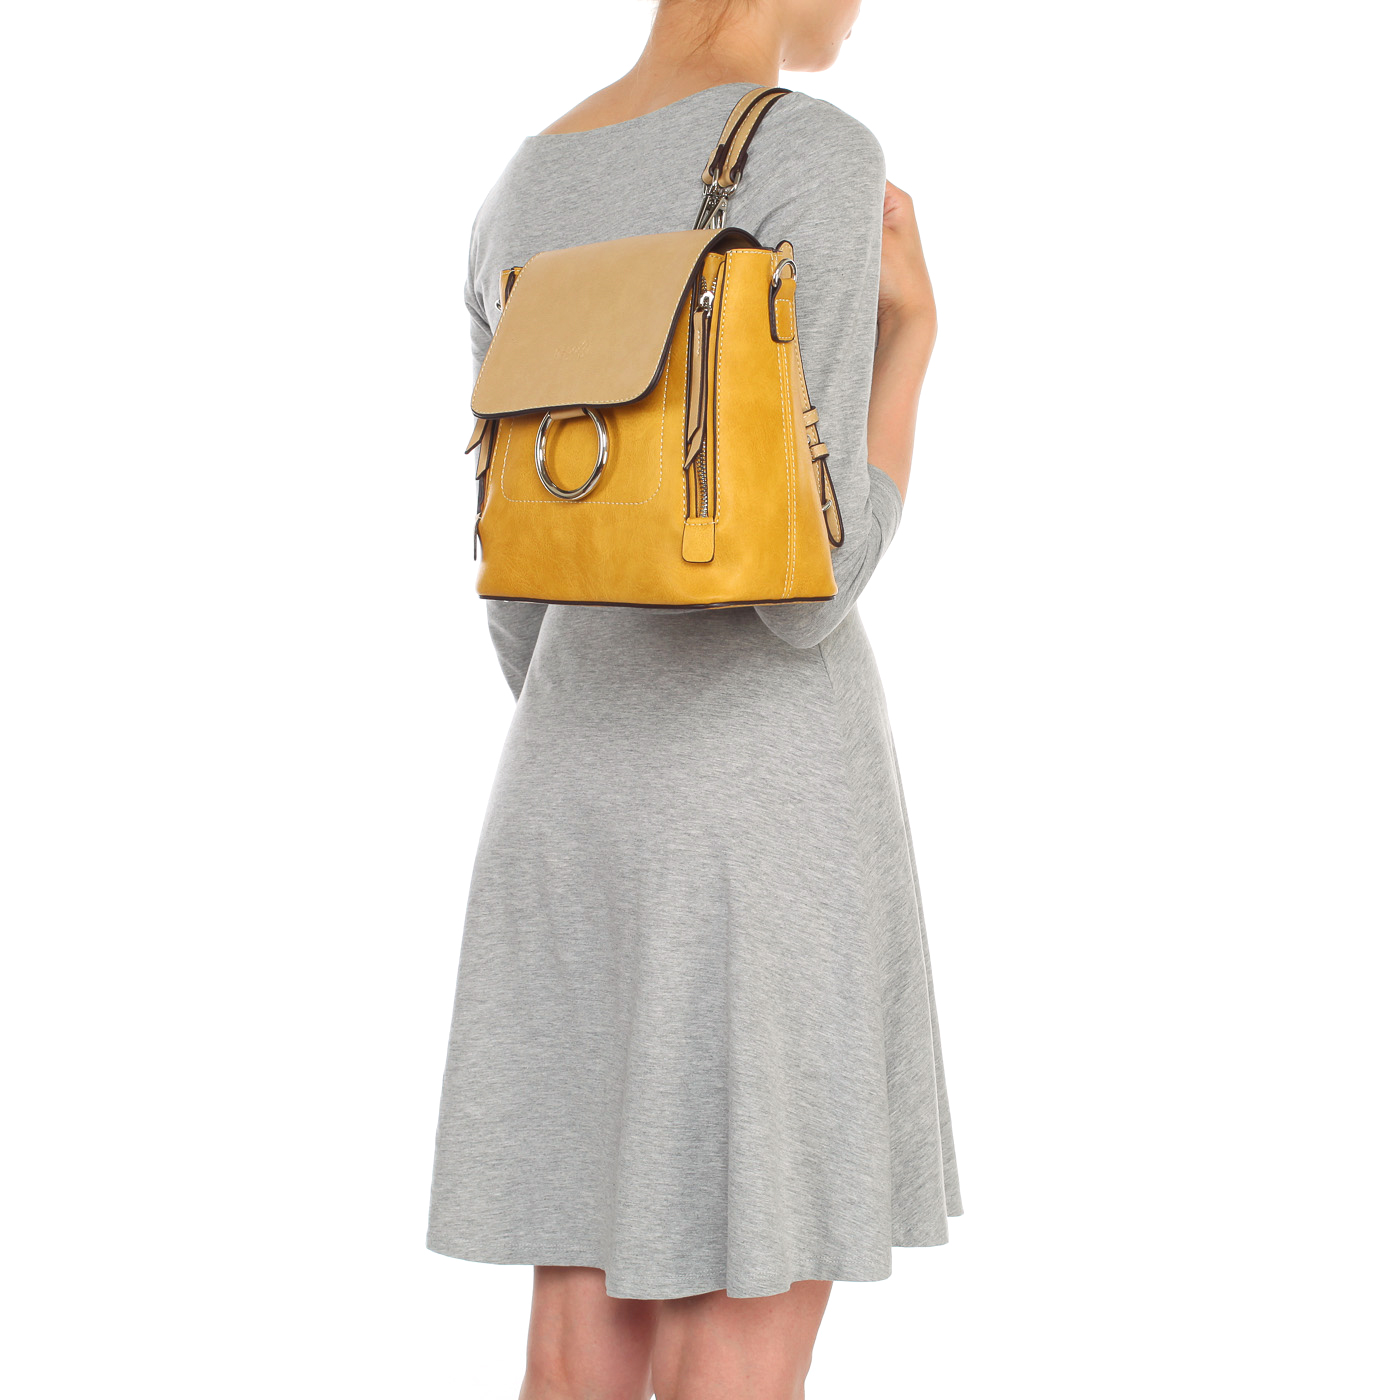 Практичная женская сумка-рюкзак из экокожи желтого цвета Dispacci 